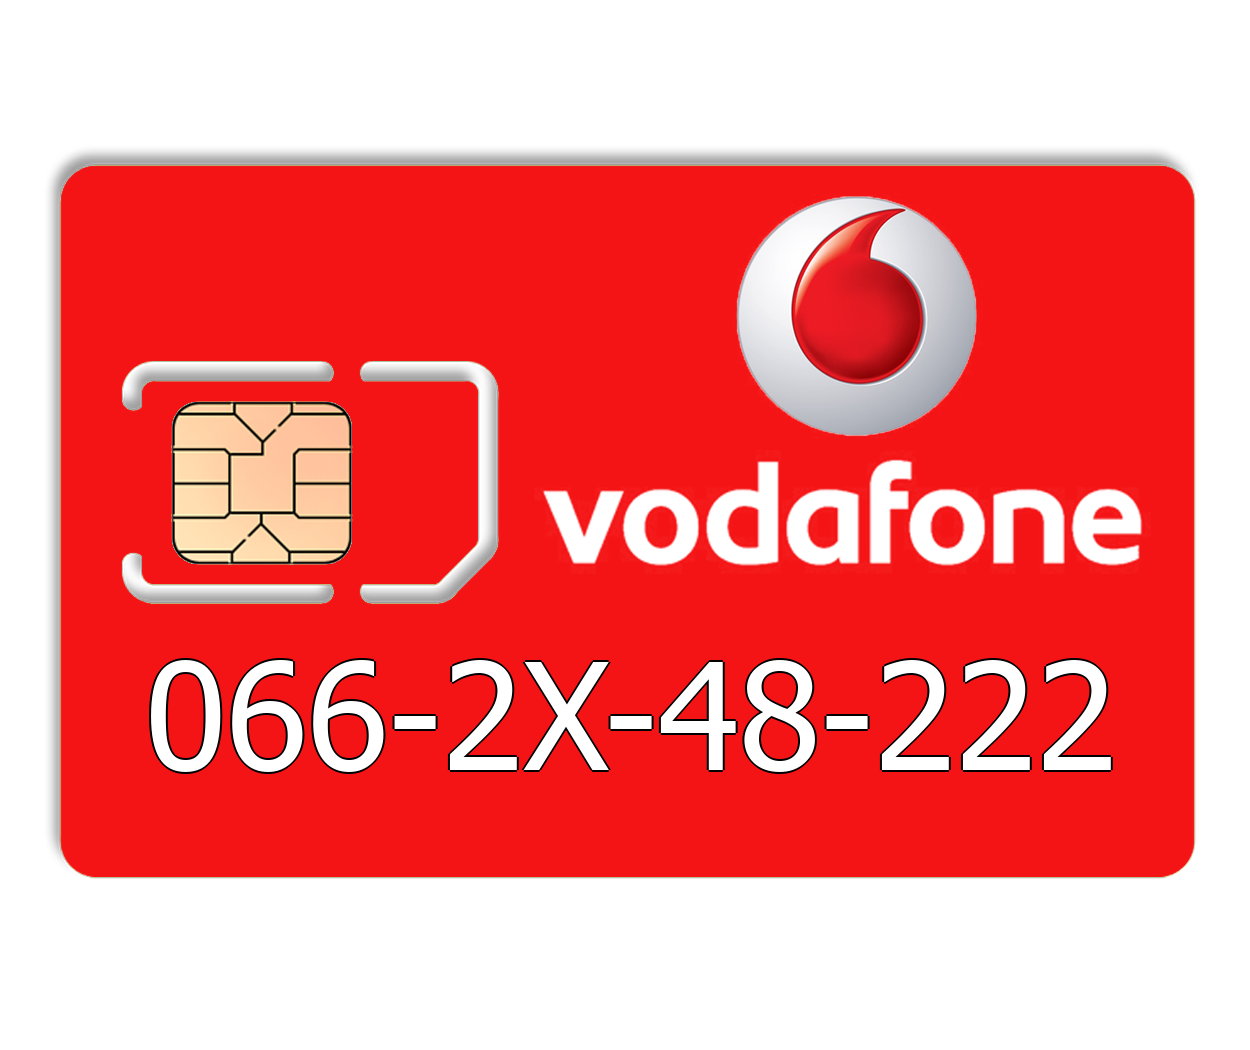 

Красивый номер Vodafone 066-2X-48-222